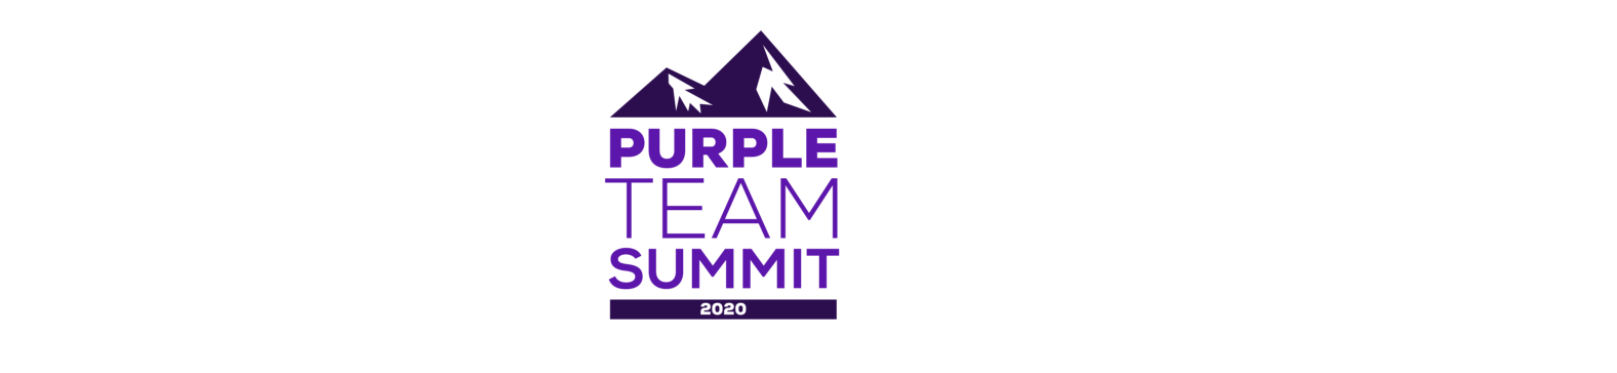 Purple Team Summit